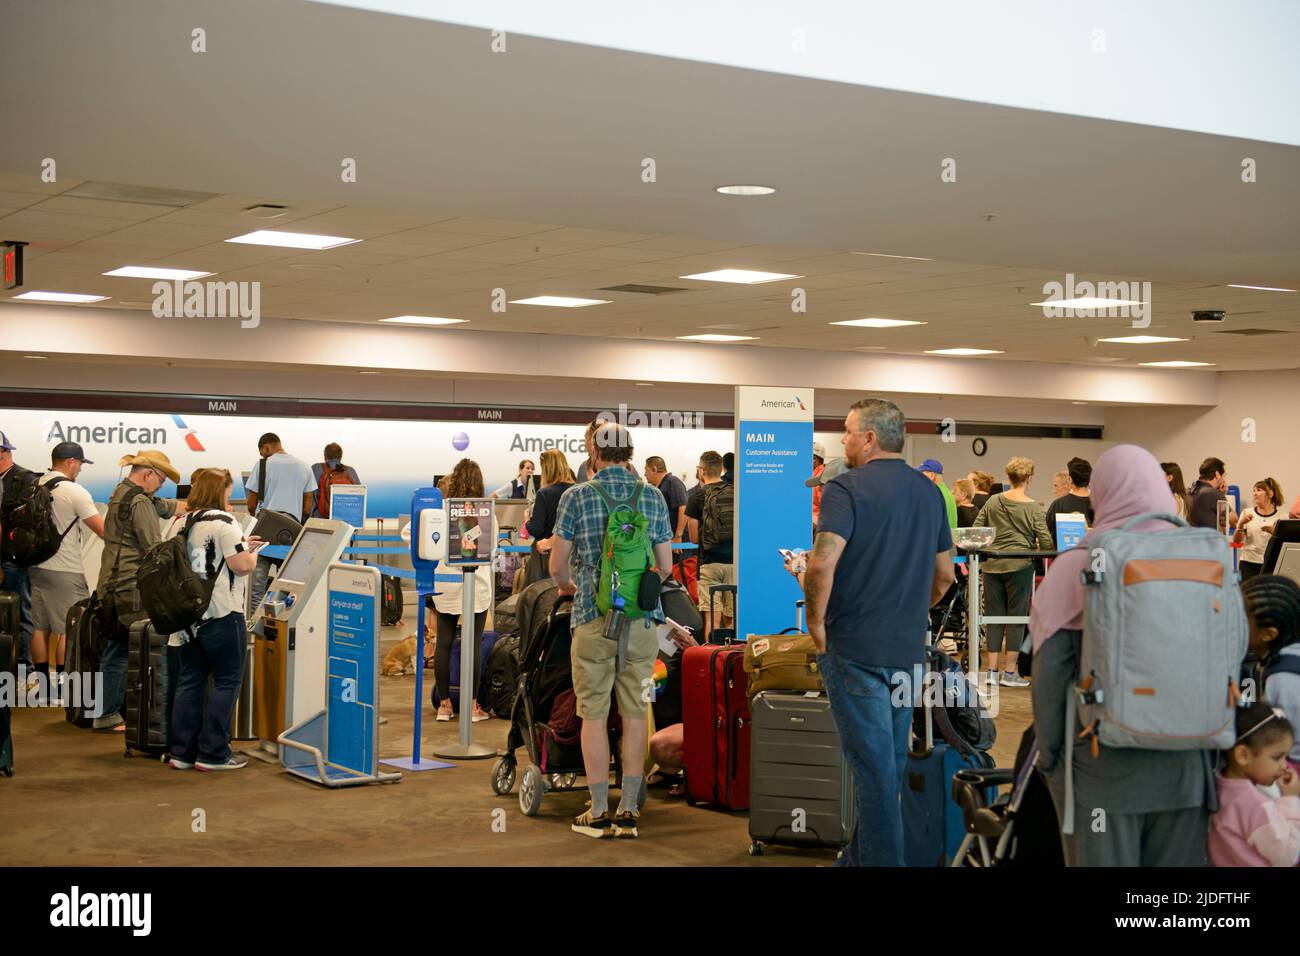 Un grand groupe de personnes attendent pour s'enregistrer aux comptoirs d'American Airlines de l'aéroport international de Tucson, Arizona Banque D'Images